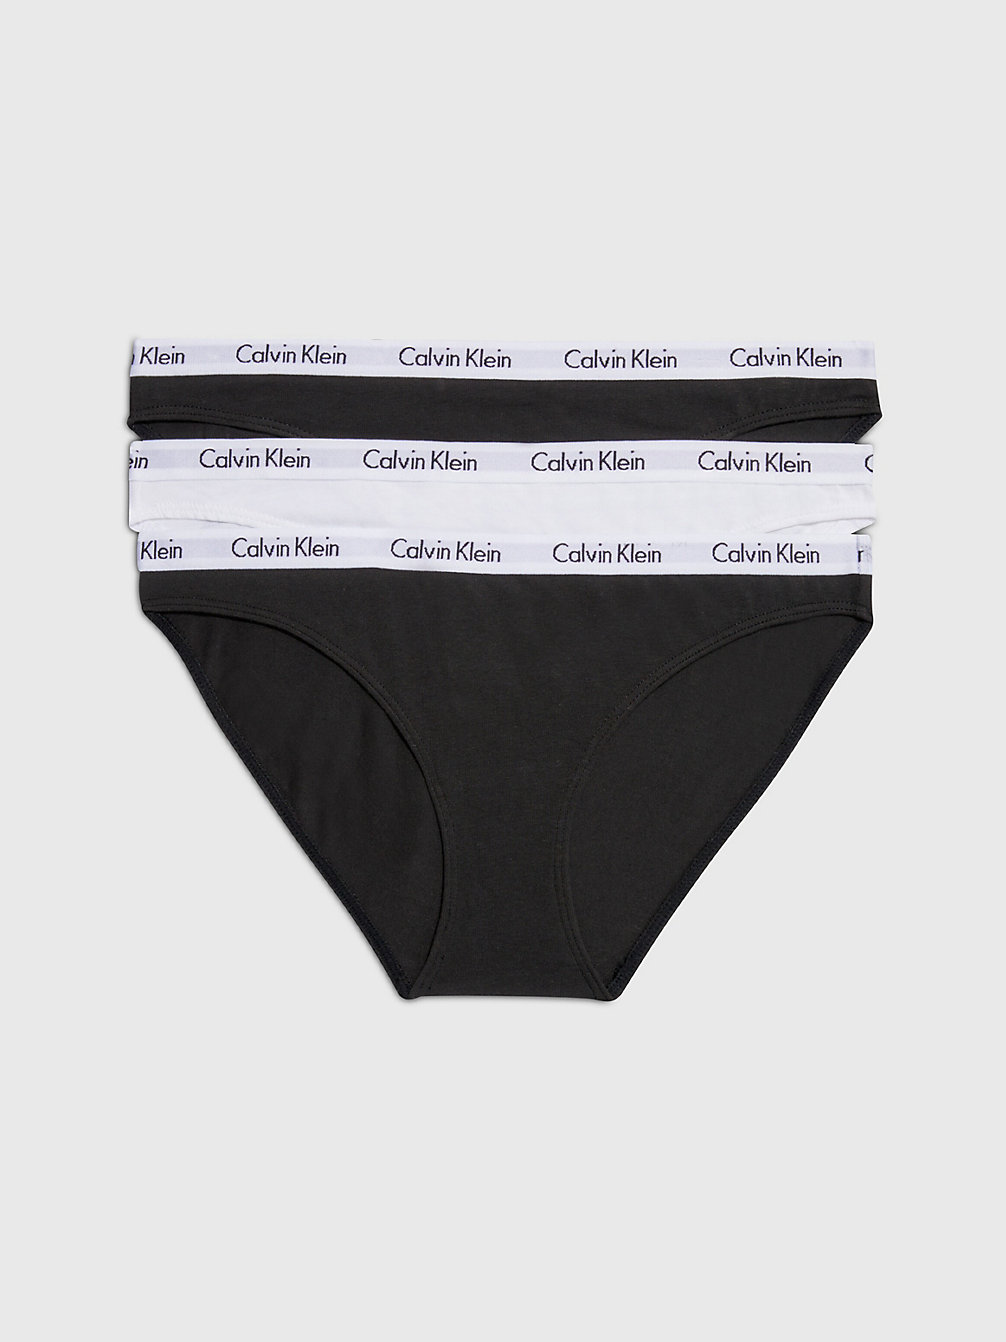 BLACK/WHITE/BLACK 3er-Pack Slips – Carousel undefined Damen Calvin Klein